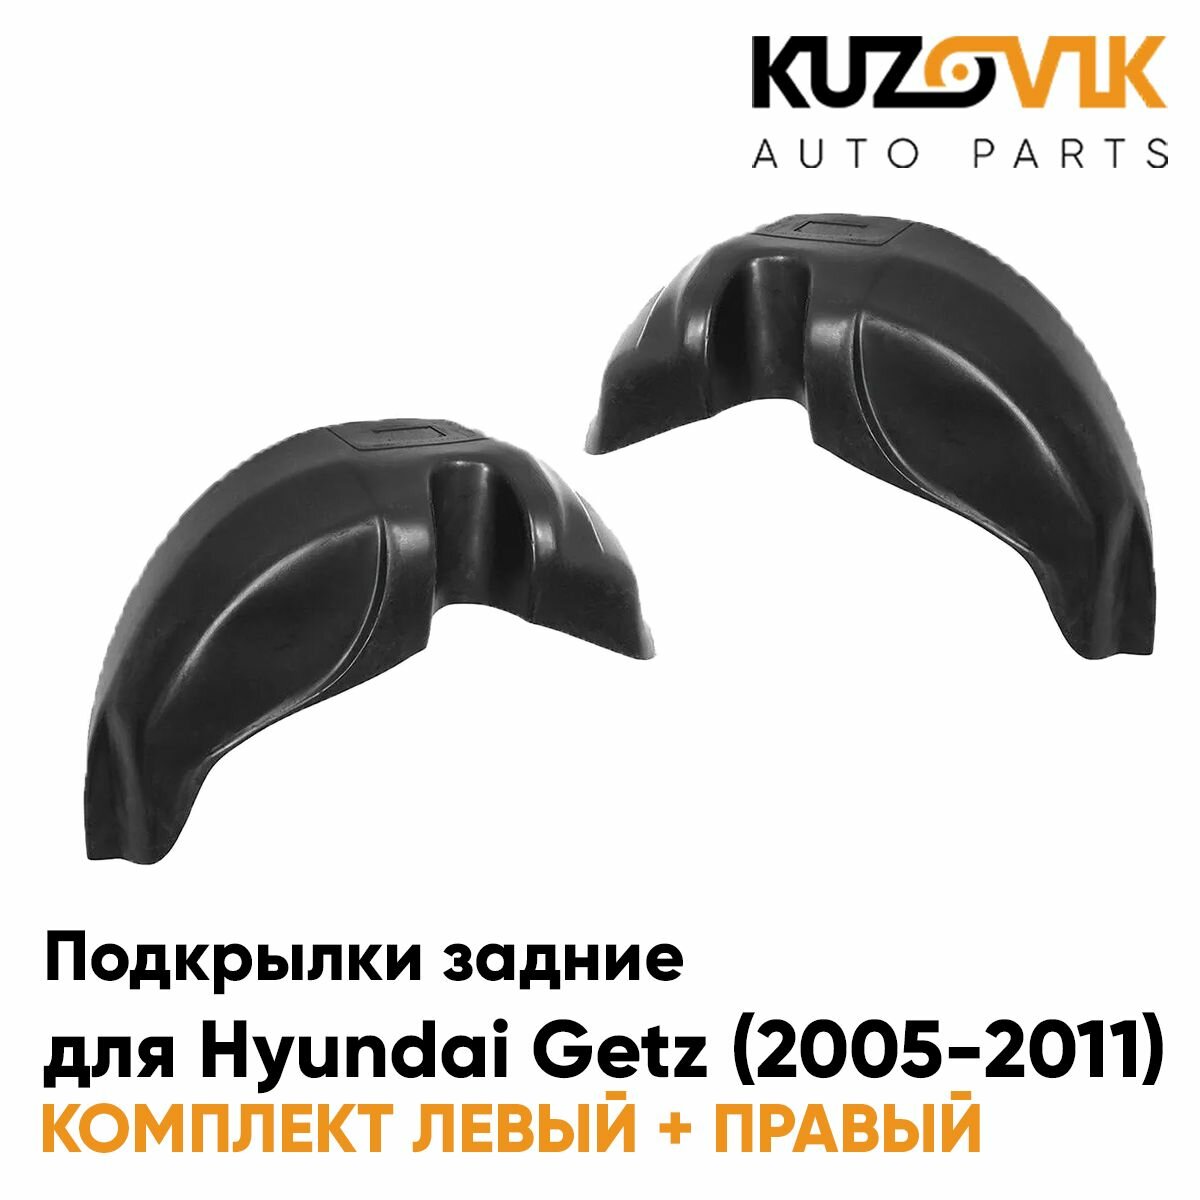 Подкрылки задние для Хендай Гетц Hyundai Getz (2005-2011) на всю арку комплект 2 штуки левый+правый, локер, защита крыла